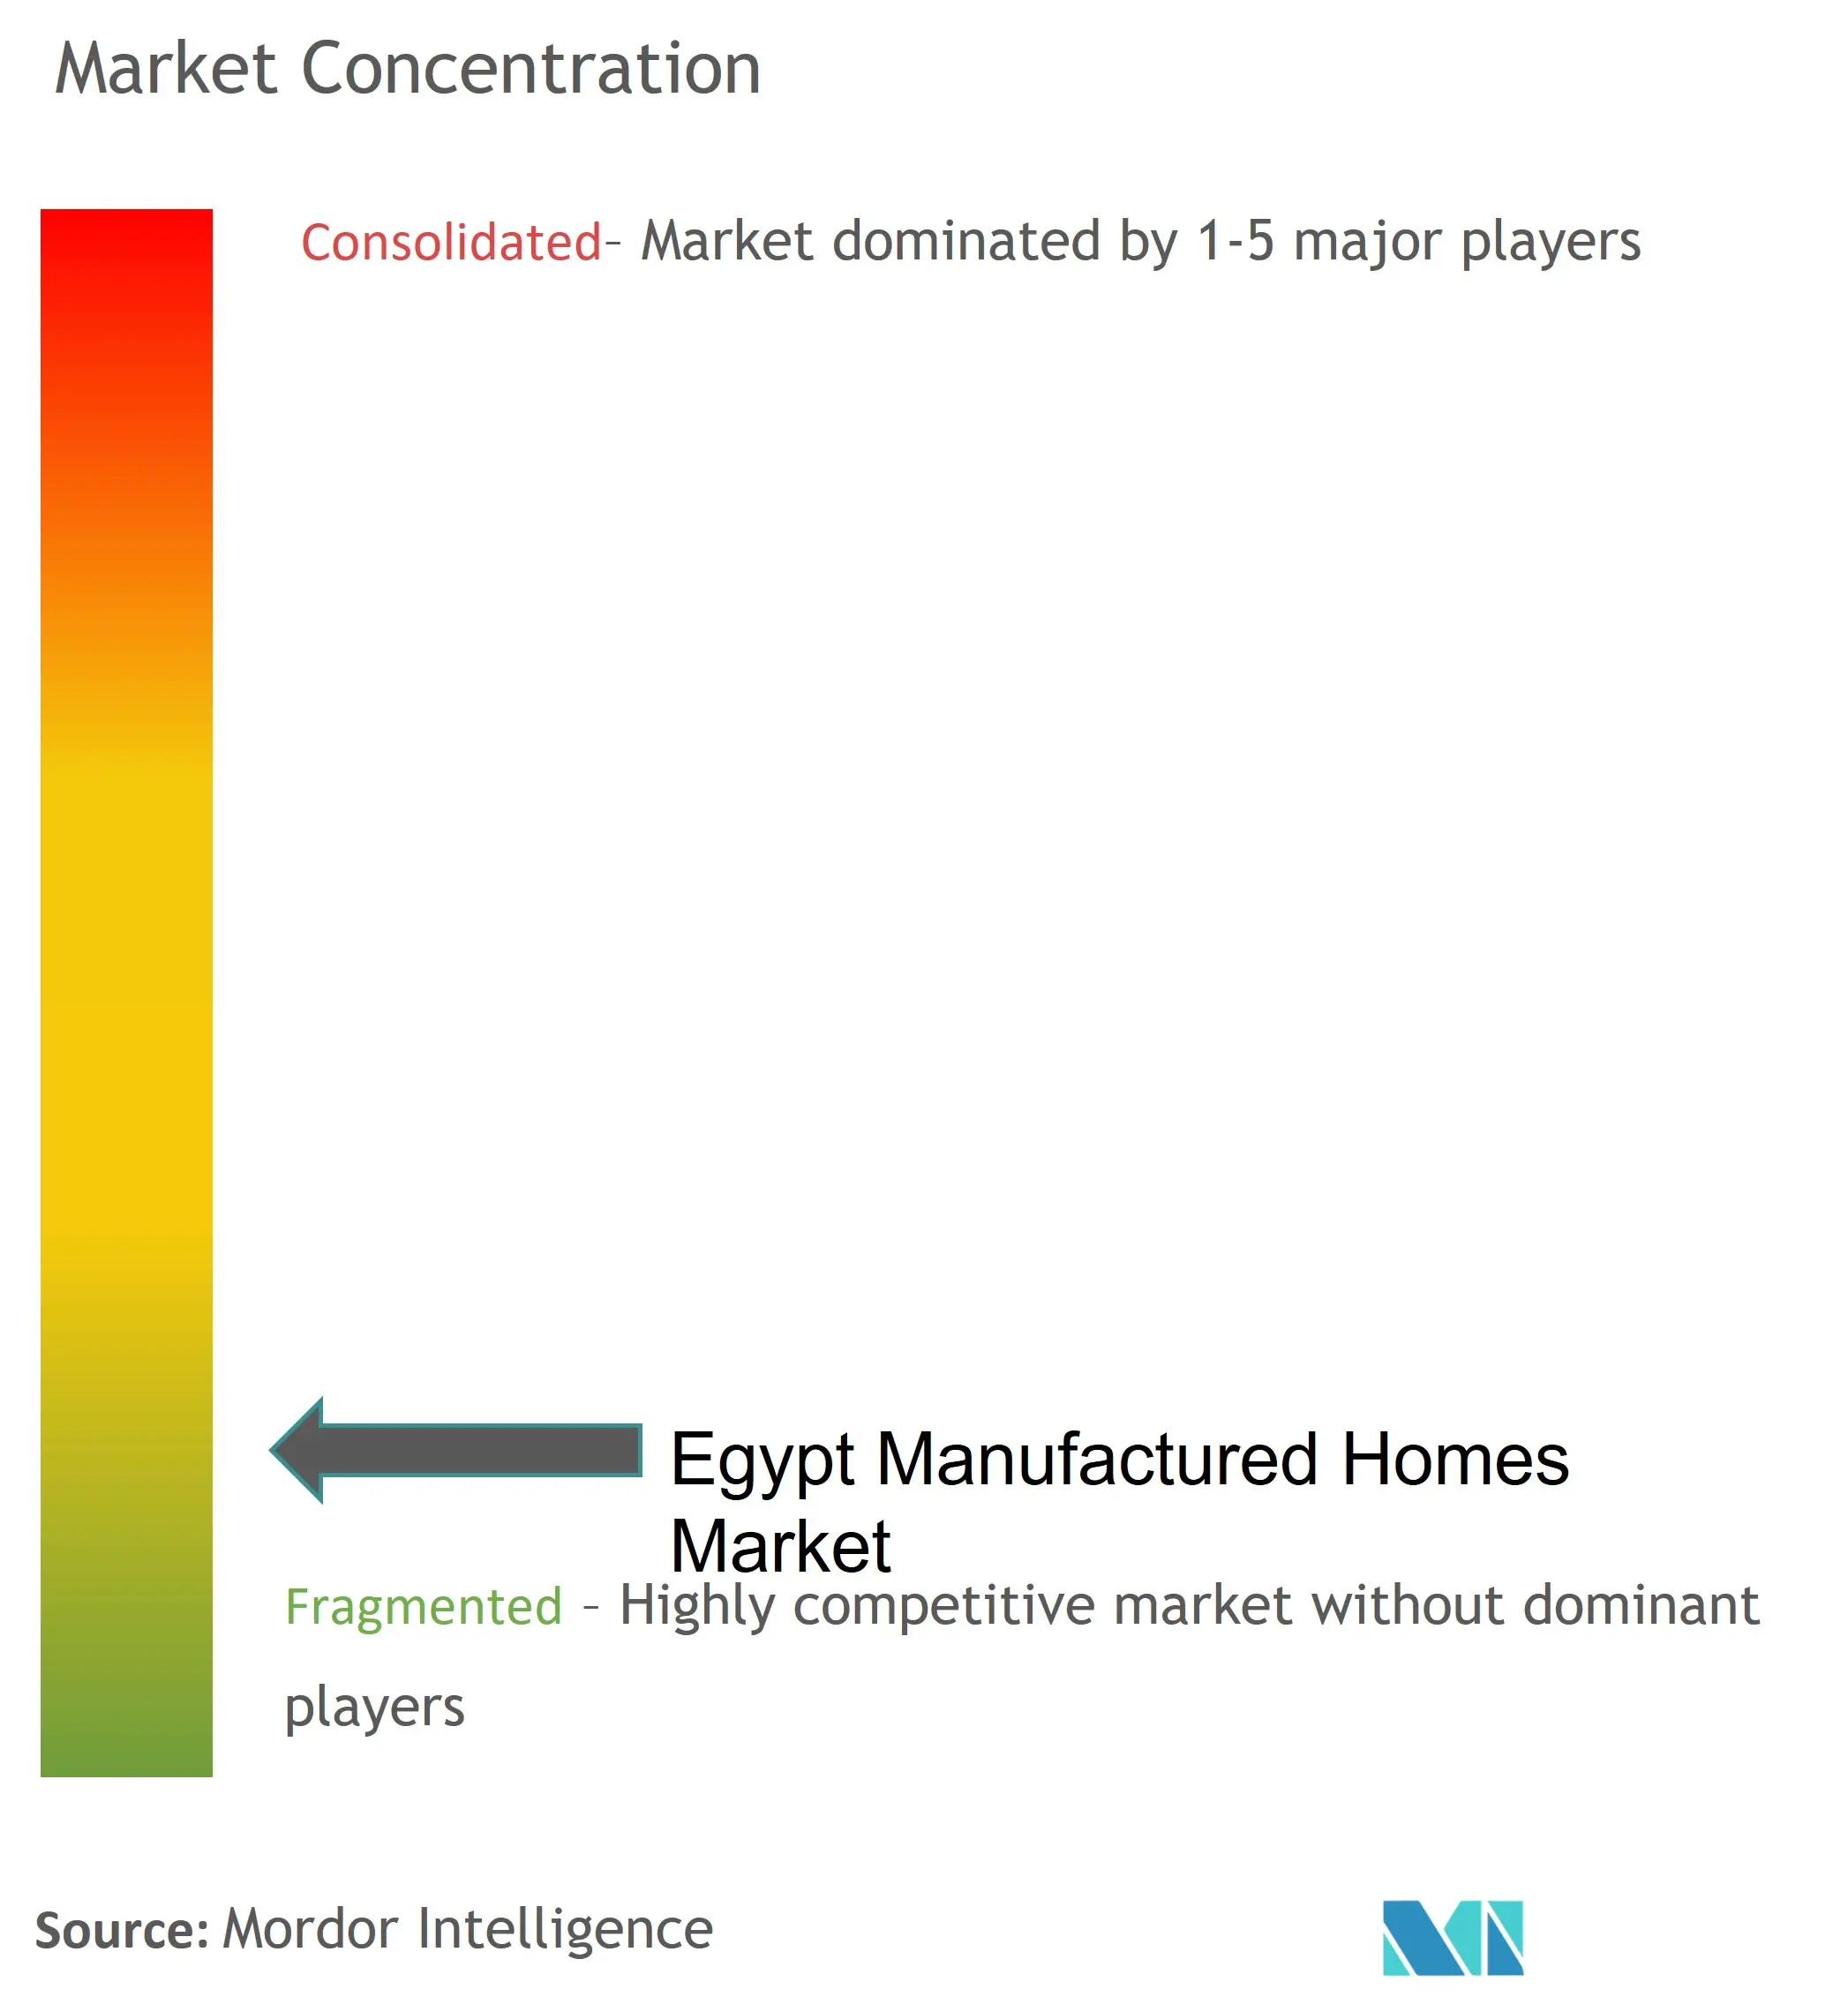 エジプト製造住宅市場 - 競争環境 